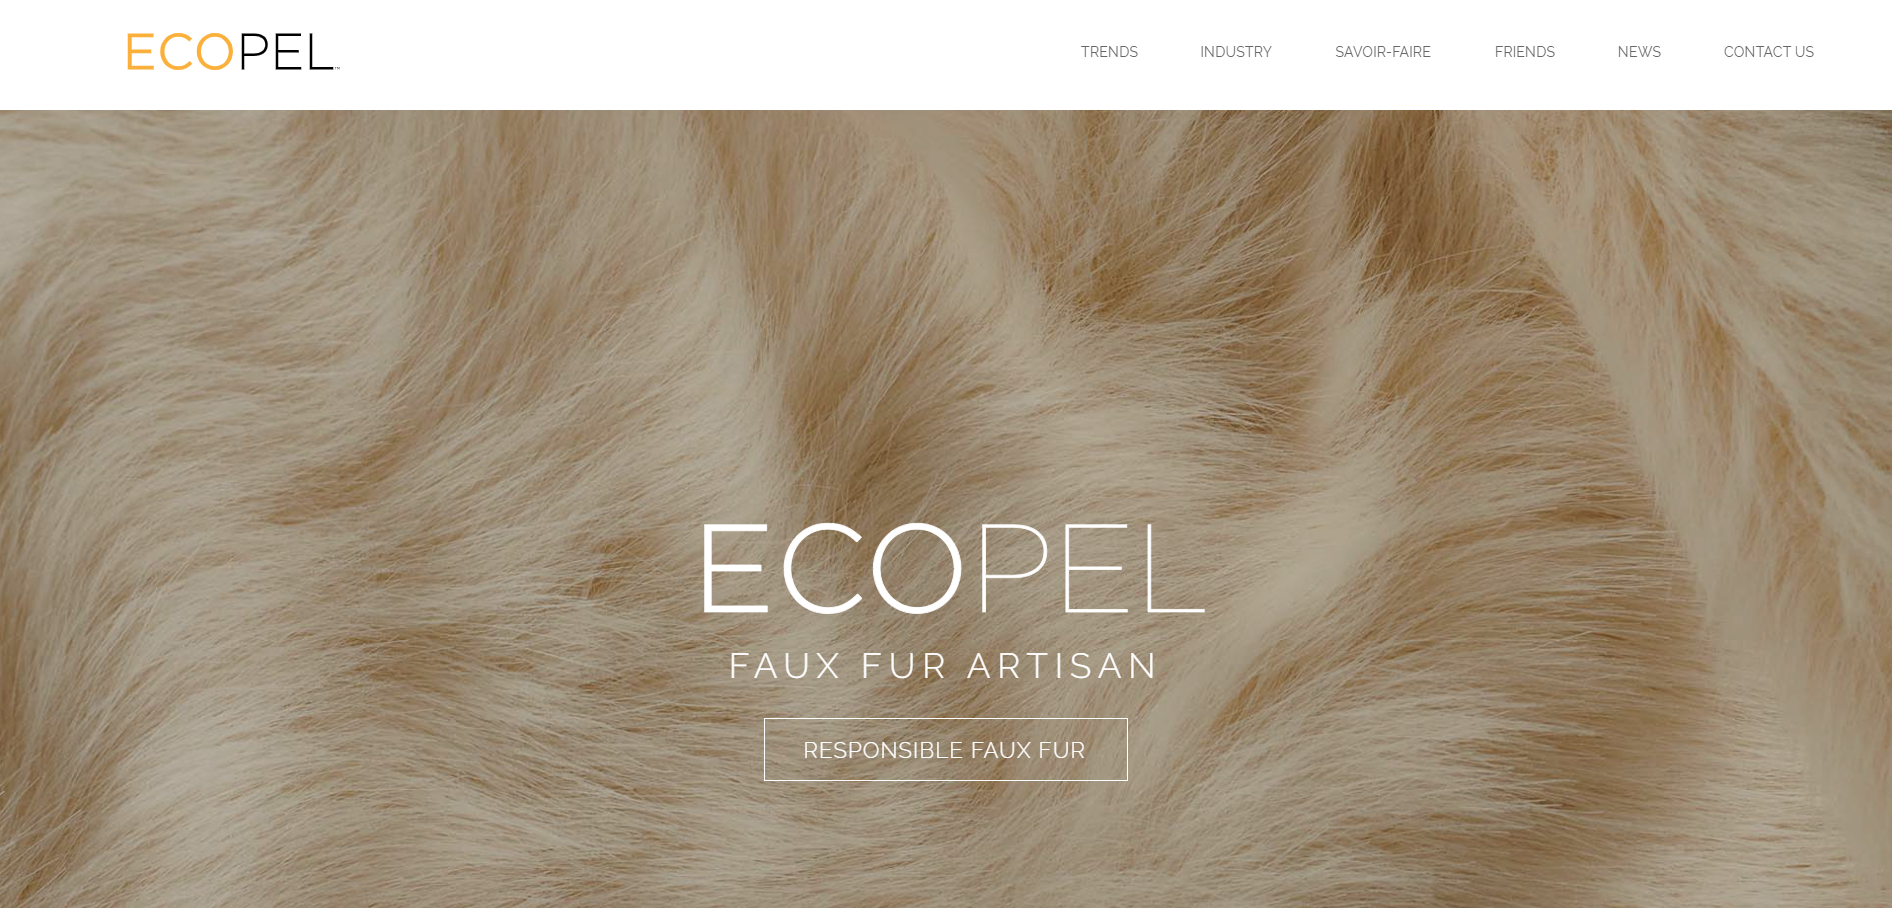 中国海欣集团旗下法国人造皮草制造商 Ecopel：到2023年前实现100%可持续